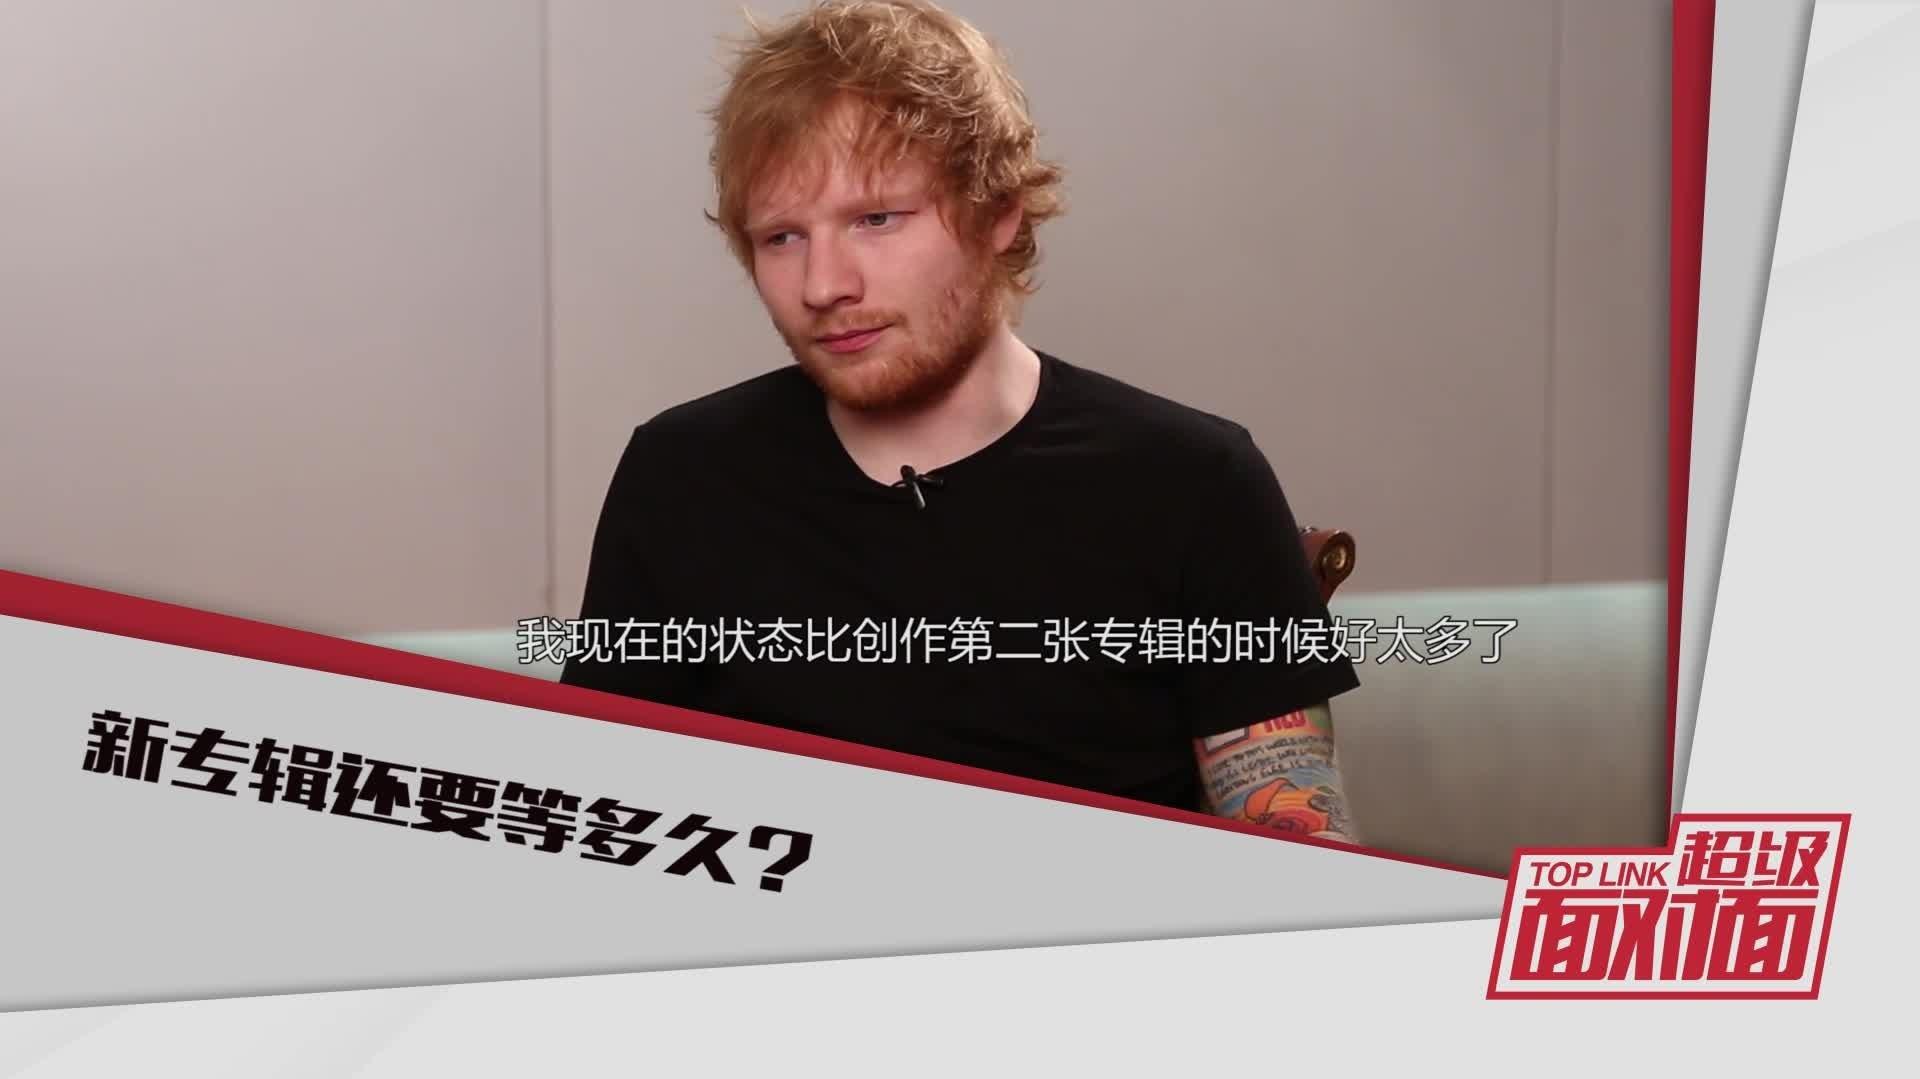 Ed Sheeran - 《超级面对面》独家对话Ed Sheeran预告片